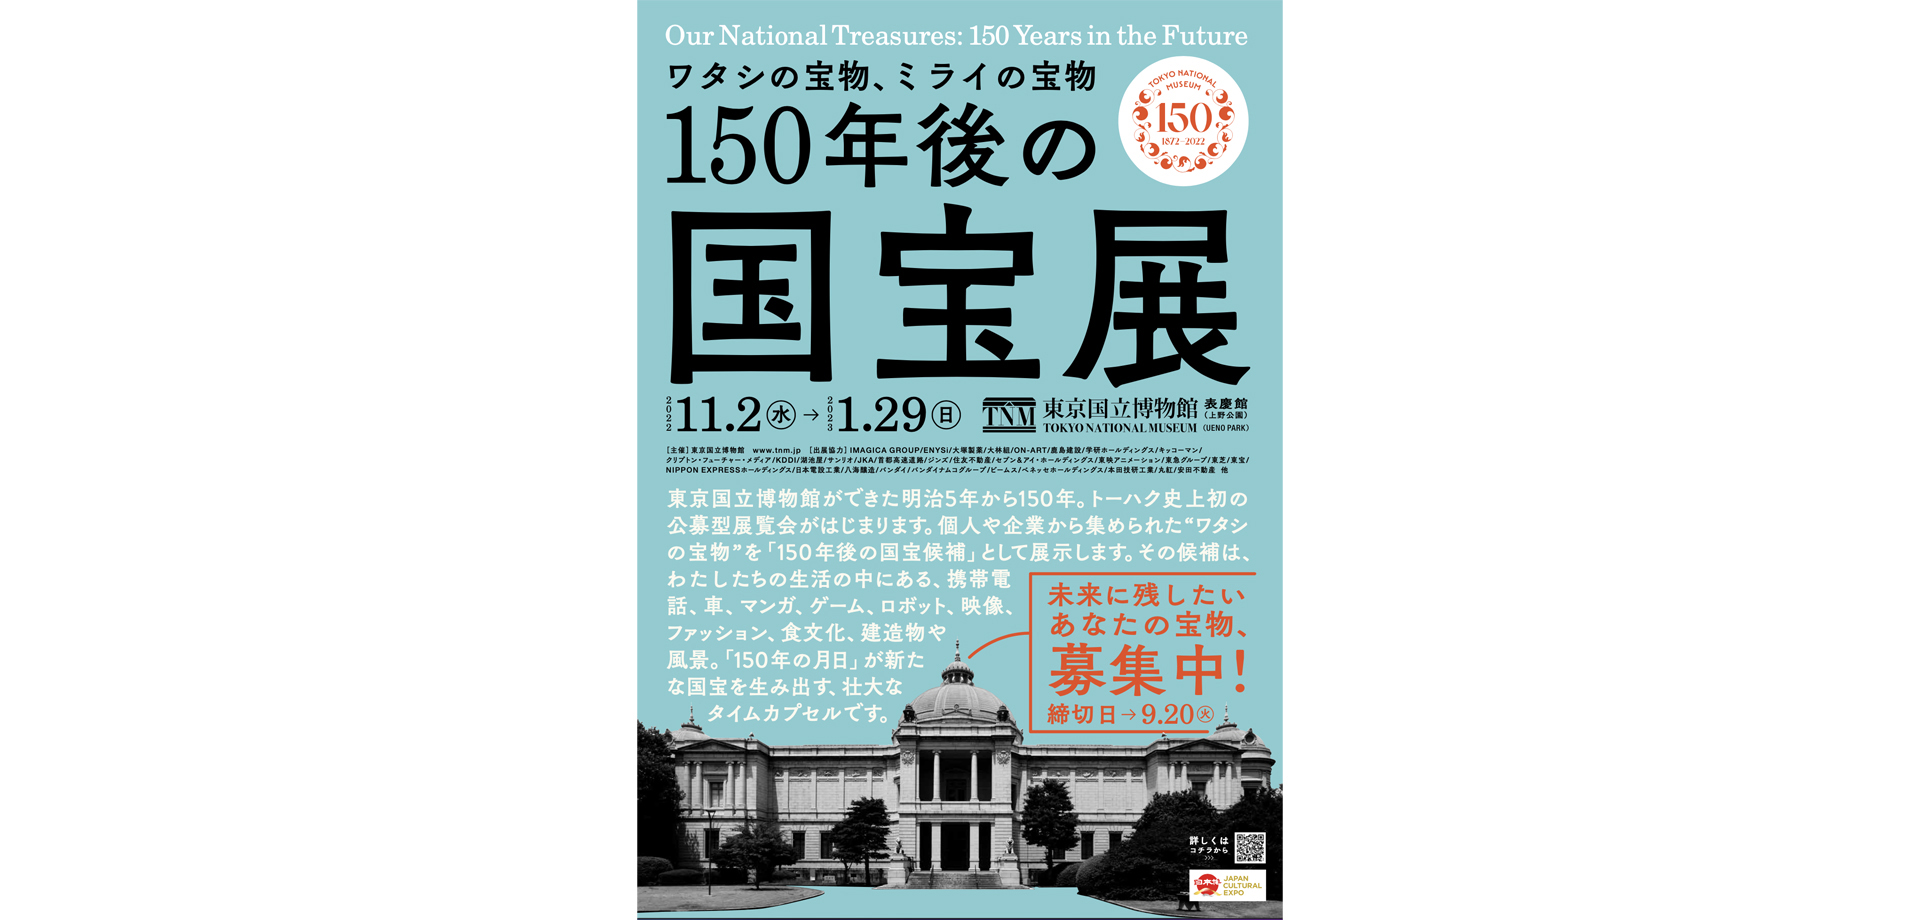 「150年後の国宝展-ワタシの宝物、ミライの宝物 東京国立博物館